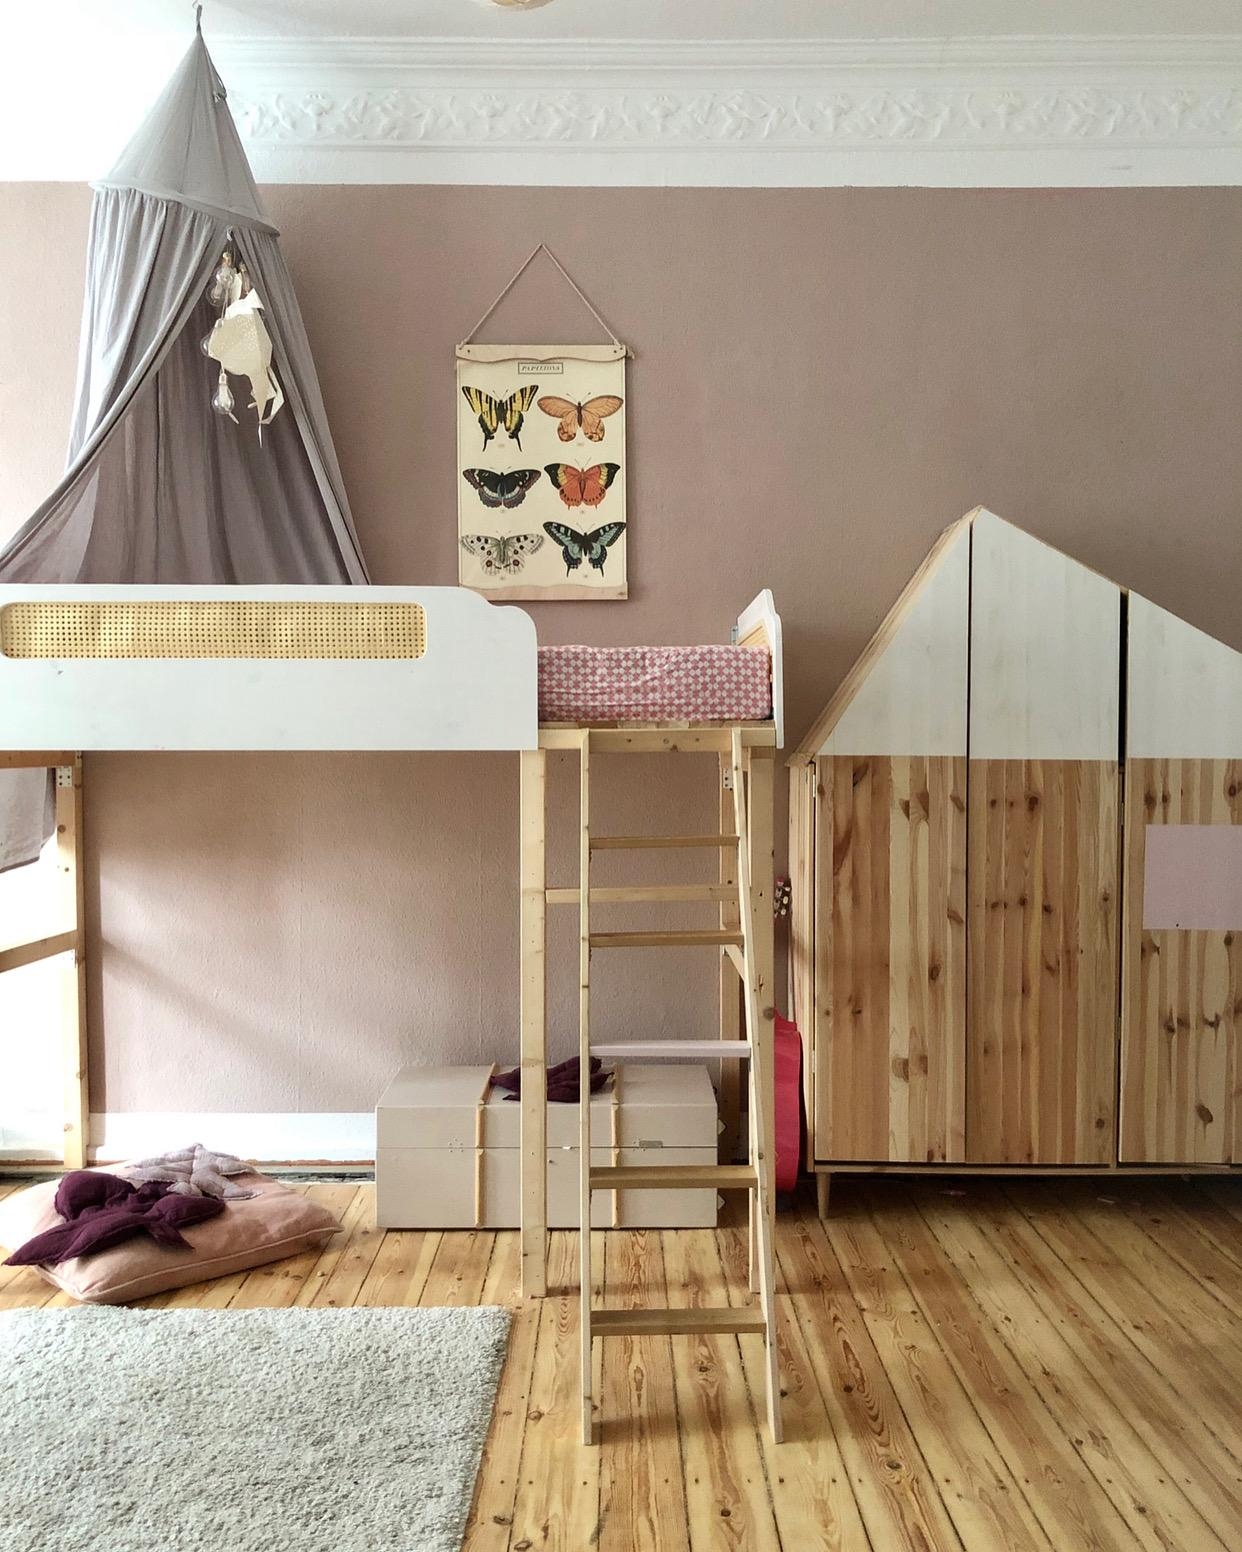 DIY Kinderzimmer-->done! ❤️ #kinderzimmer #hochbett #diy #holzboden #stuck #altbau 